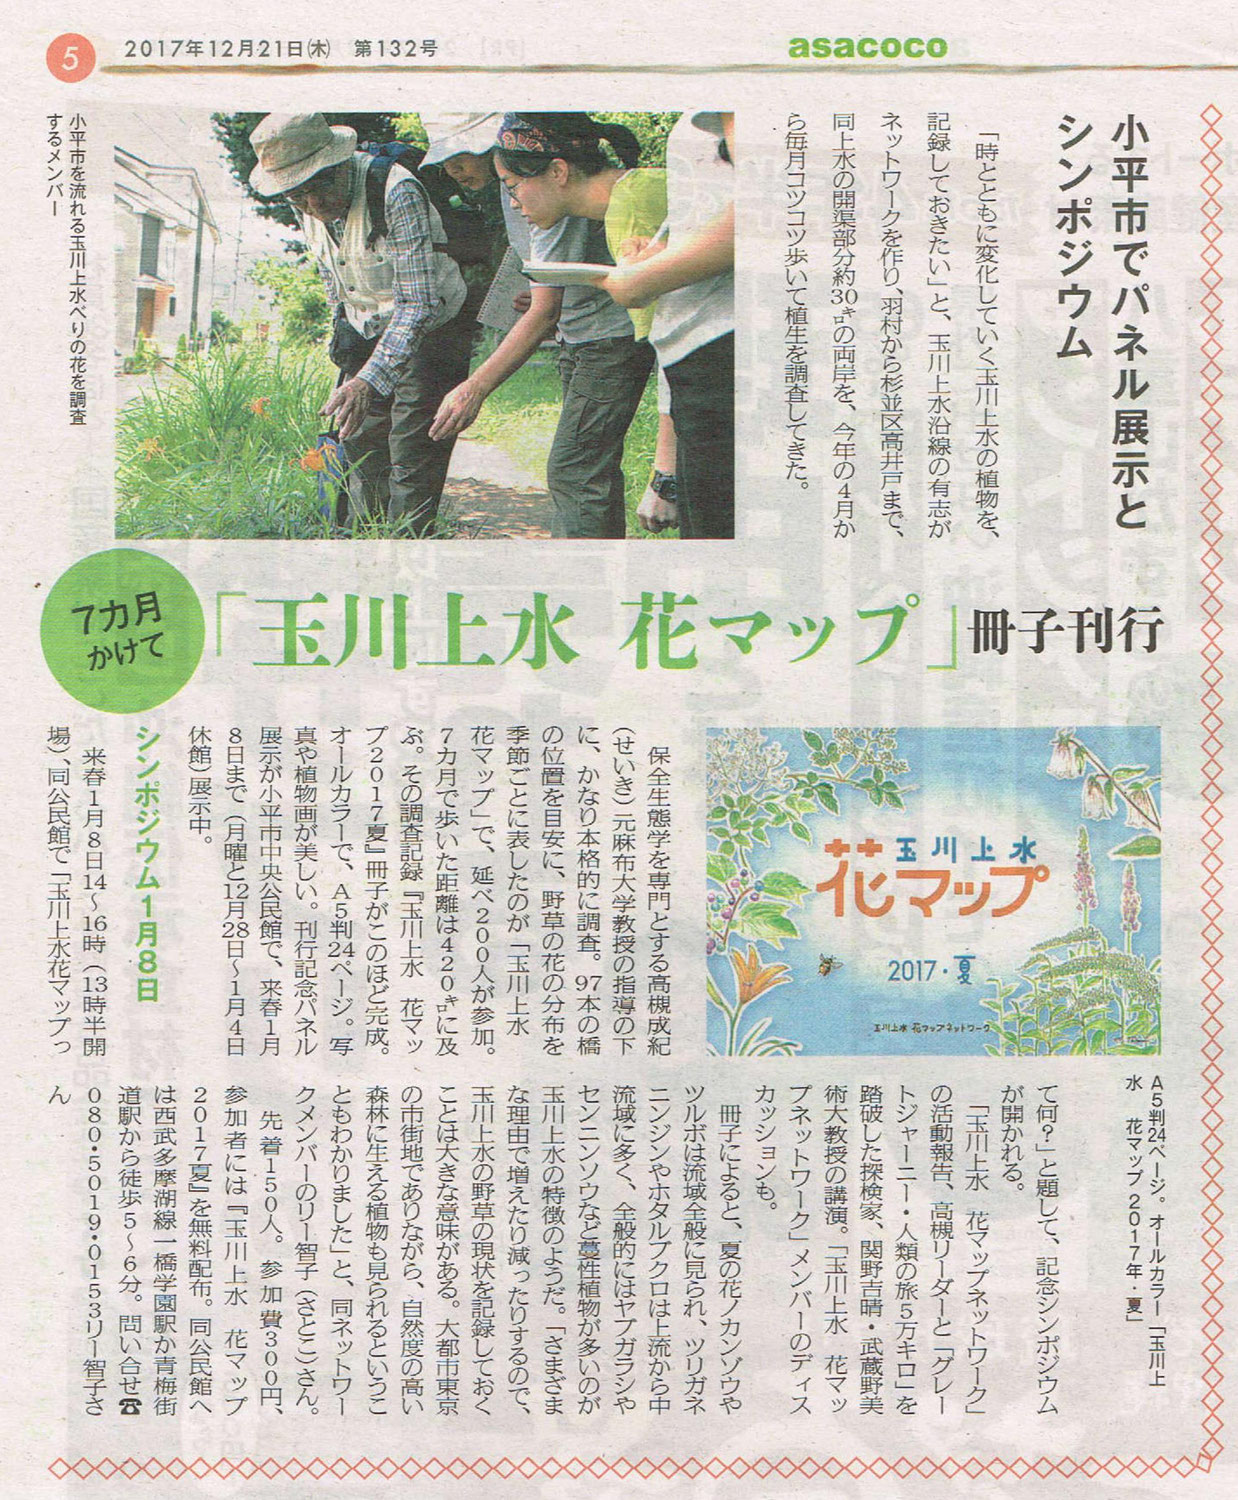 2017年12月21日朝日新聞asacocoに玉川上水花マップの記事が載りました。